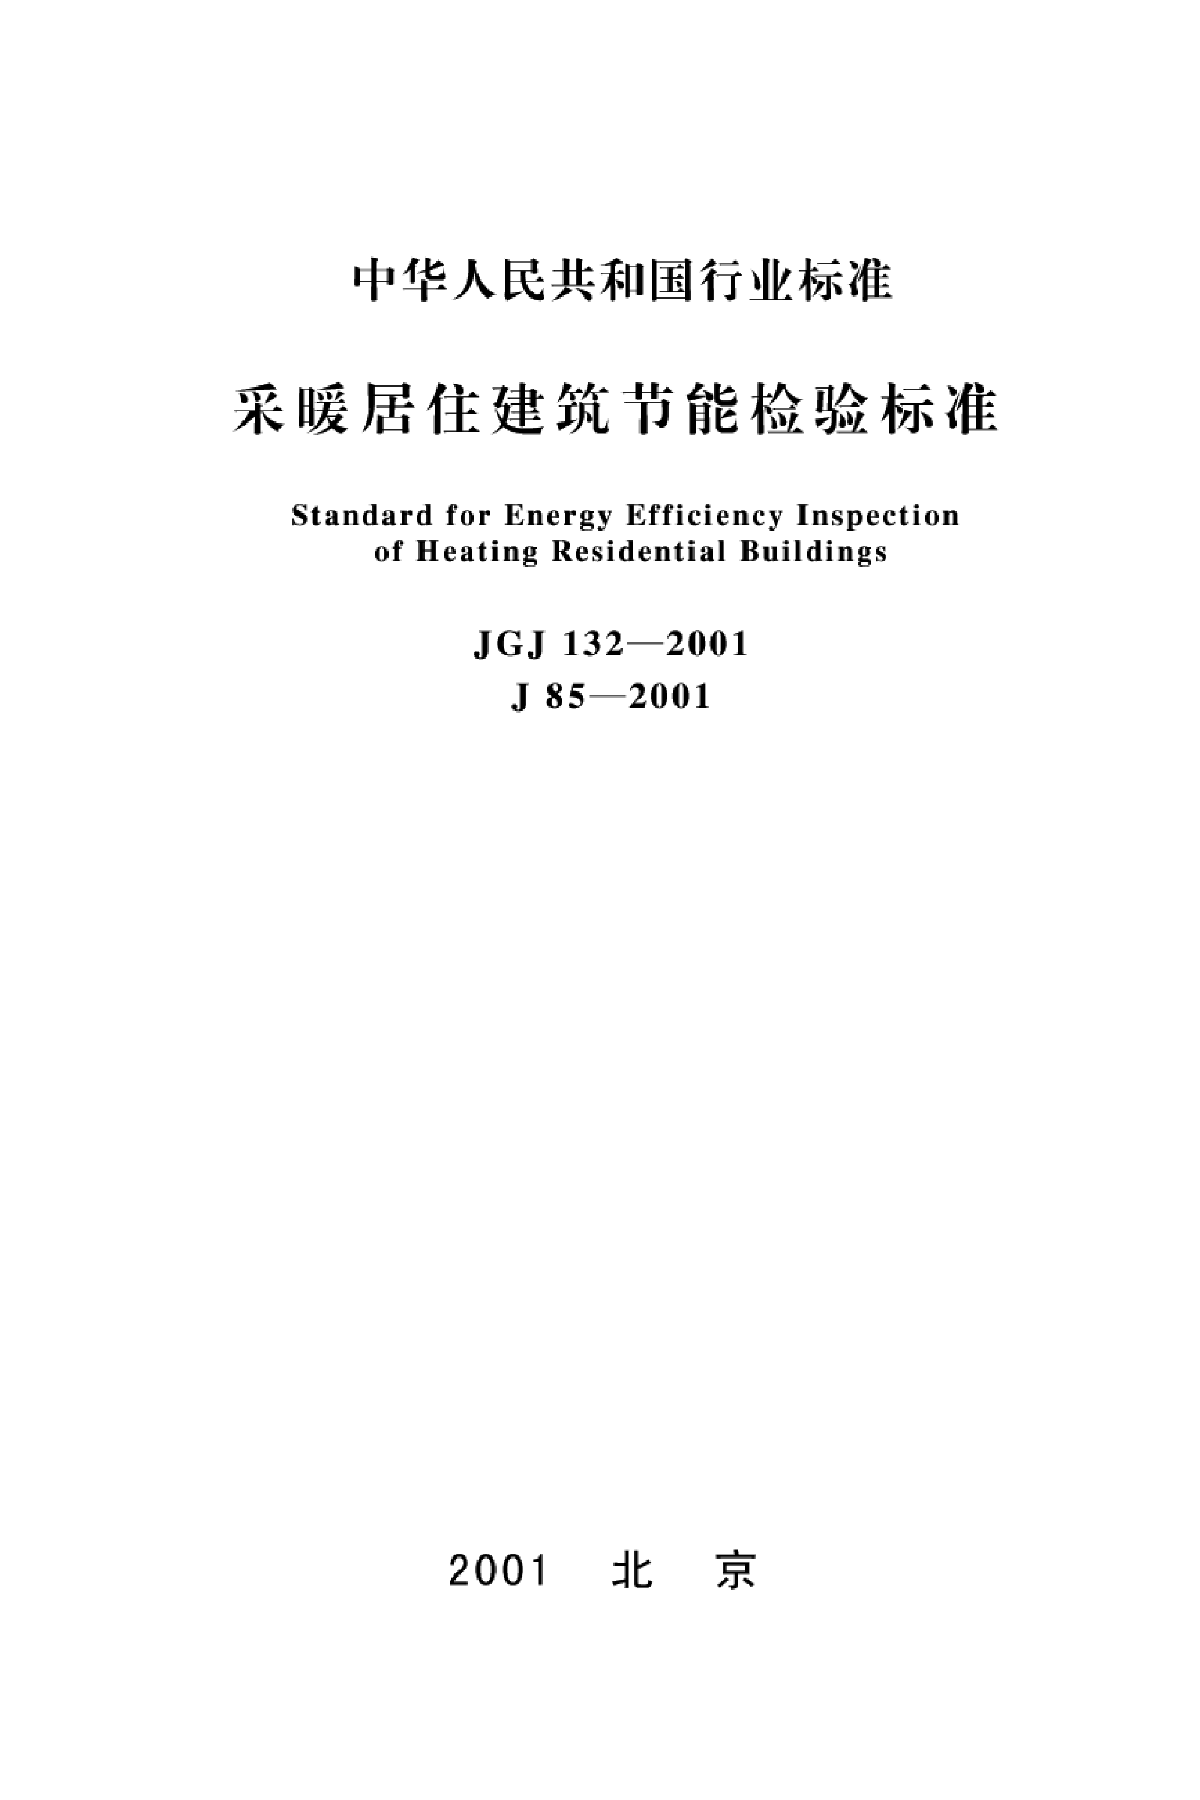 采暖居住建筑节能检验标准PDF版(JGJ132-2001)